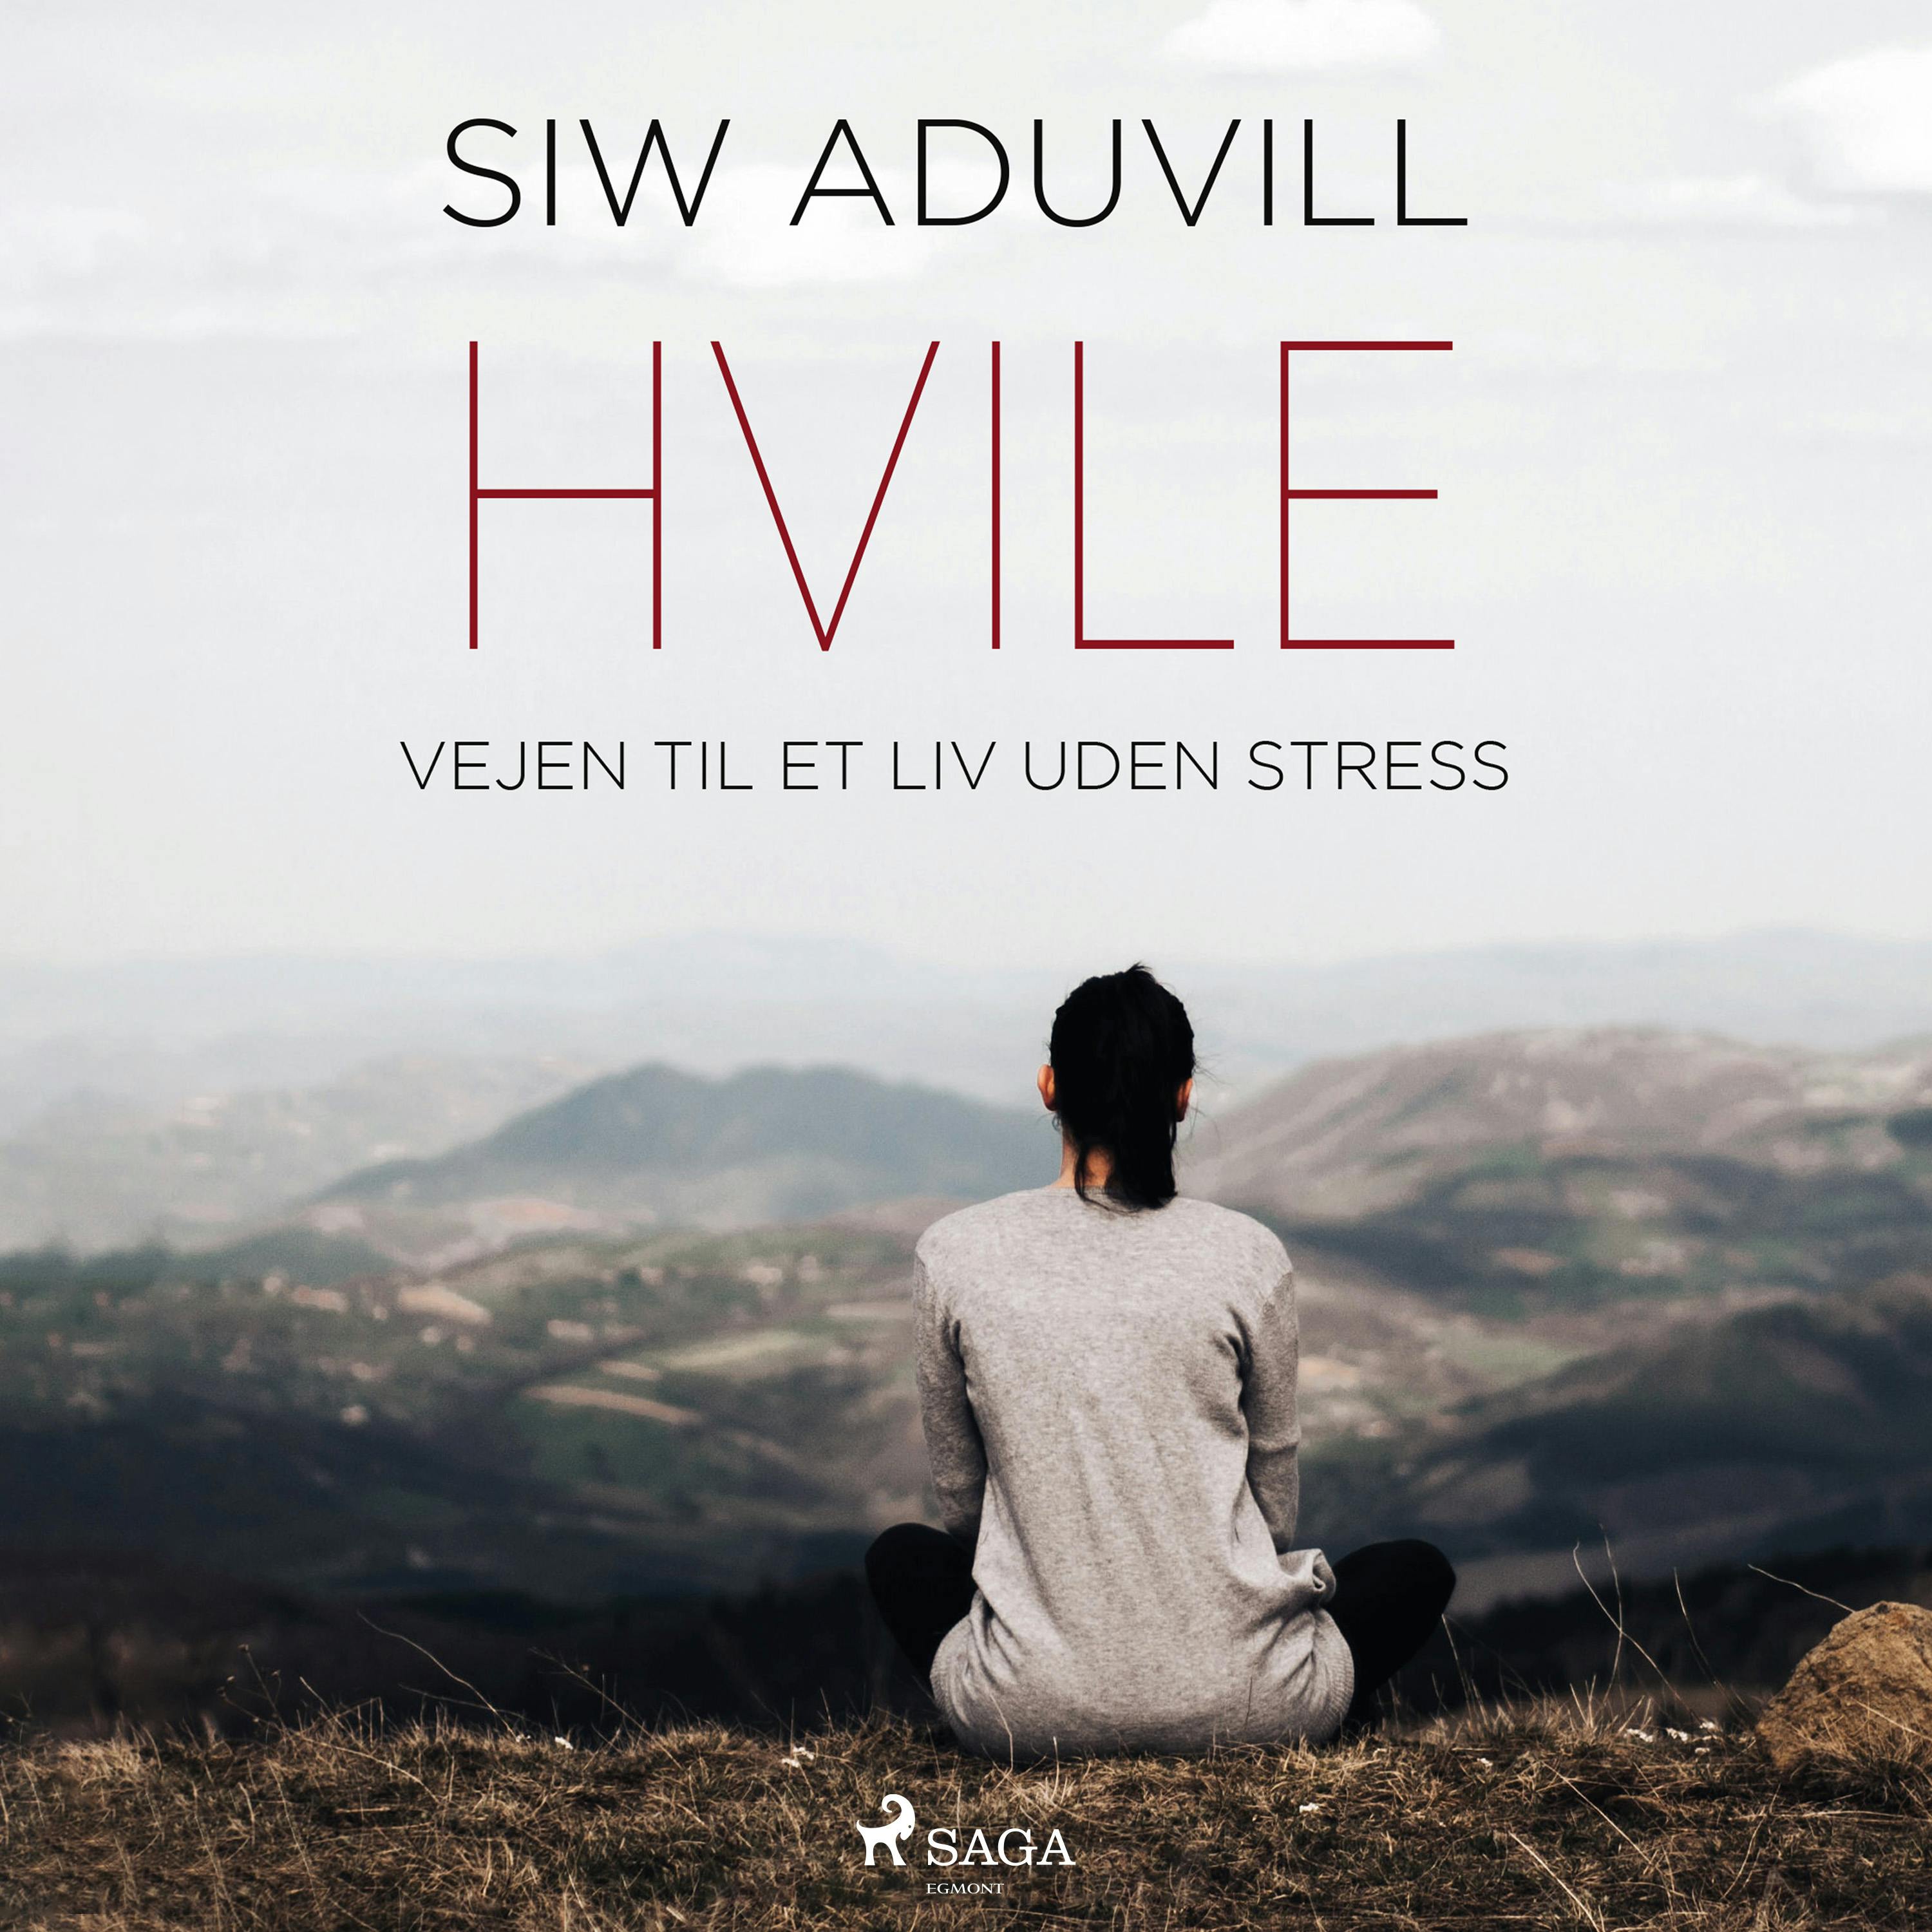 Hvile - Vejen til et liv uden stress - Siw Aduvill